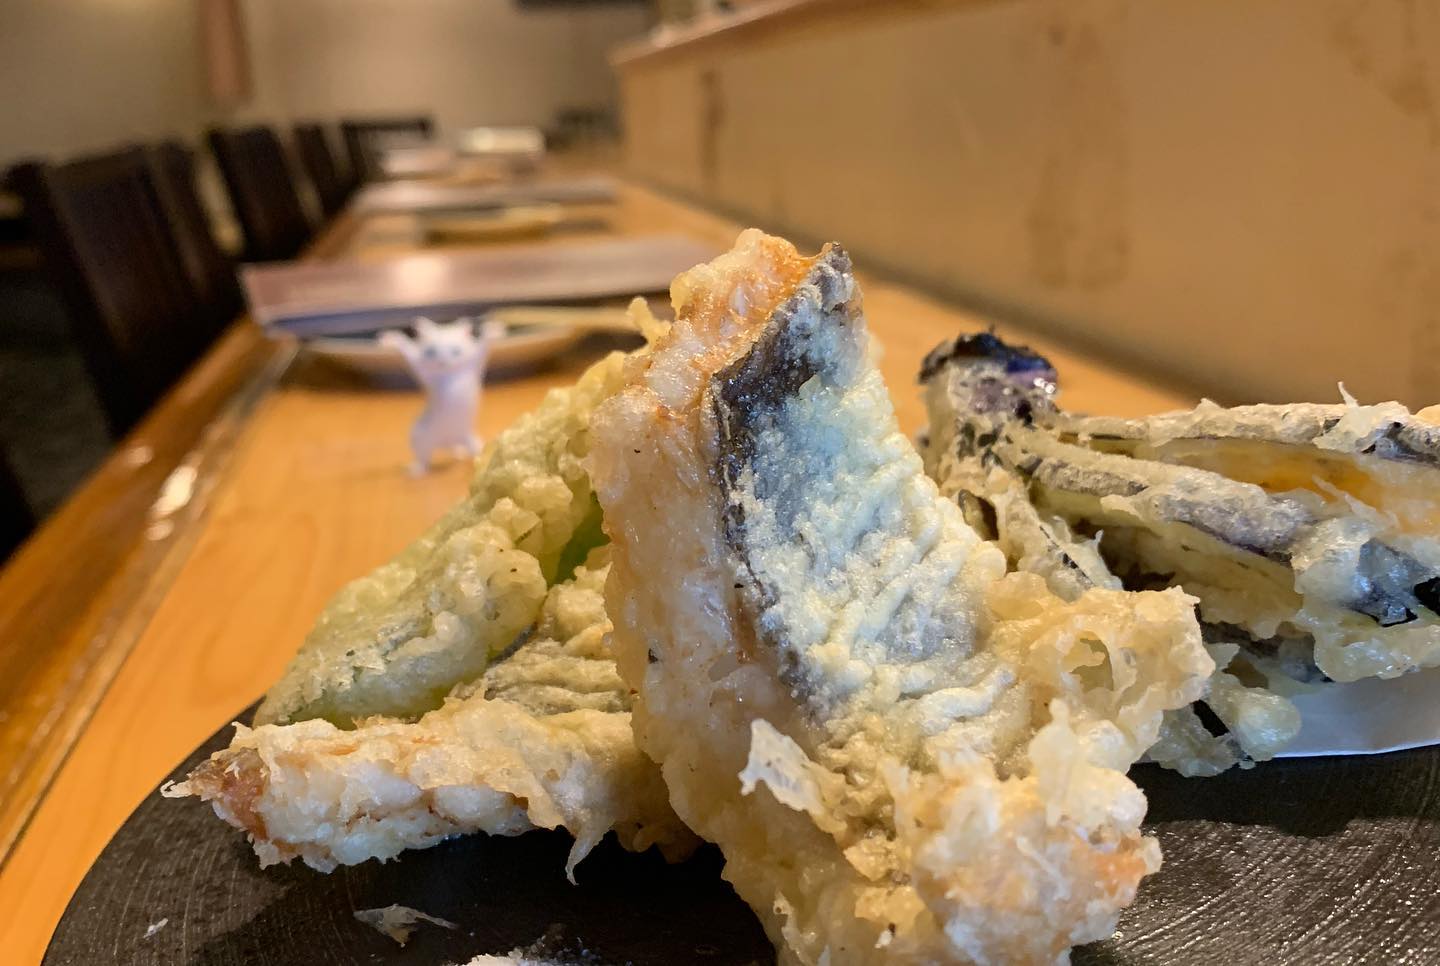 今日の逸品
メヌケの天ぷら
メヌケ別名青そいっていうお魚なんですがこいつが天ぷらにするとこれまたふわふわの身で最高なんですよ
白身の身で優しいしっとりとしたほのかな脂がたまらんです🤤